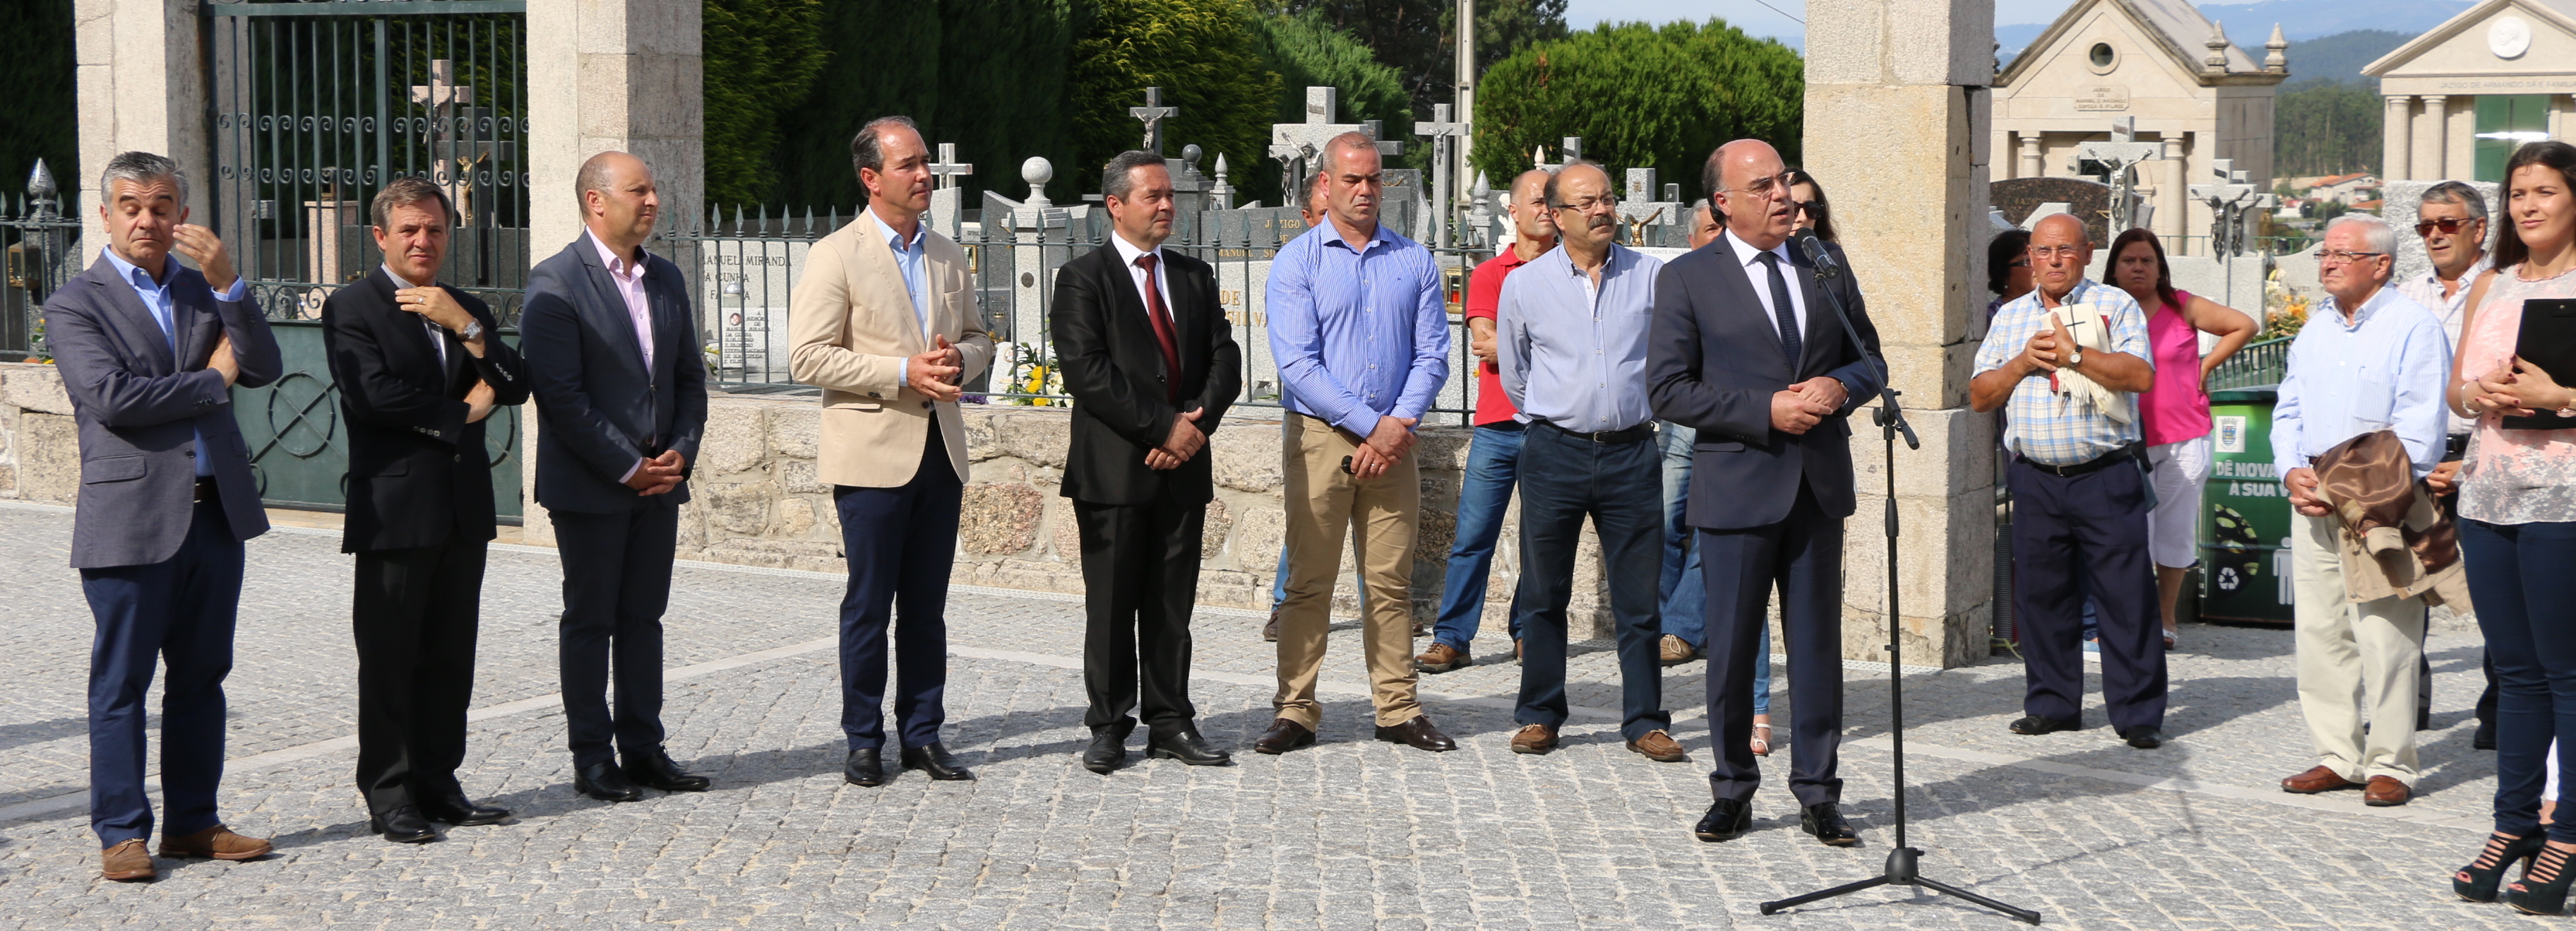 Presidente da Câmara inaugura acesso ao cemitério de Monte de Fralães